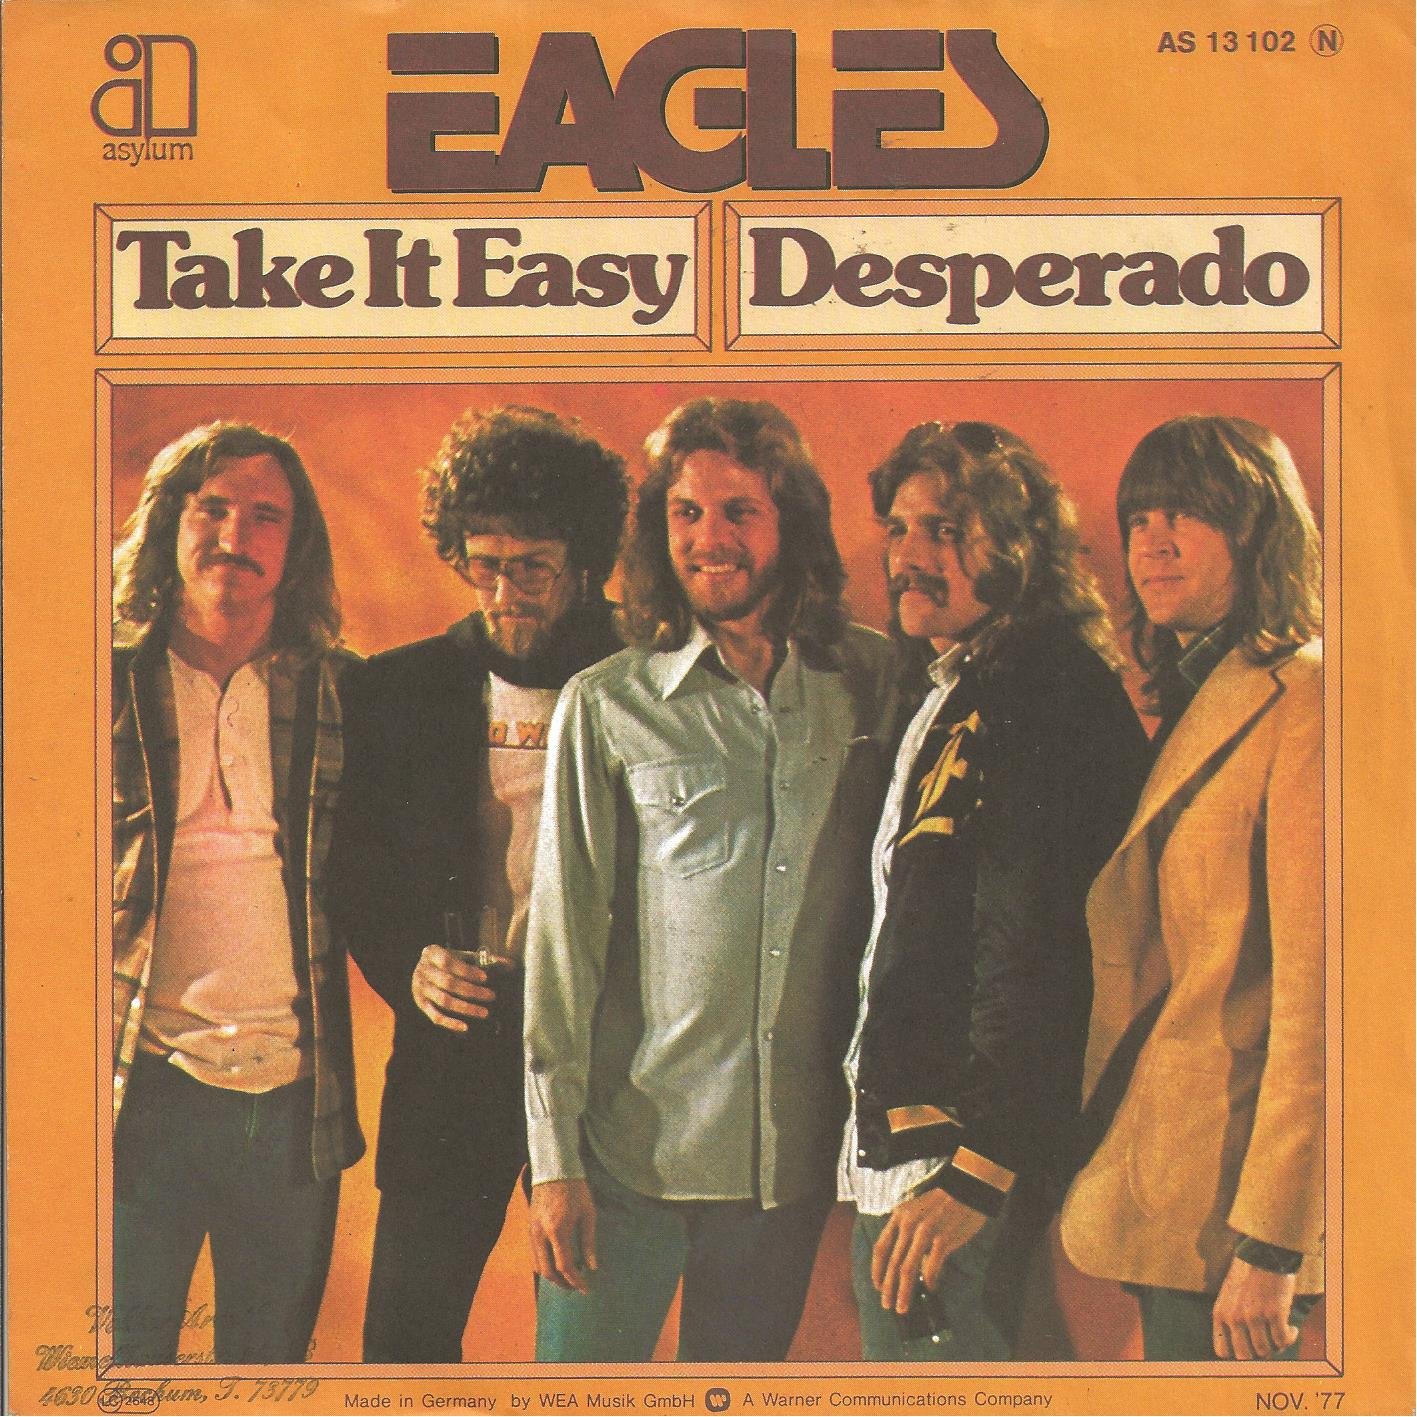 Behind The Song: The Eagles, “Desperado”